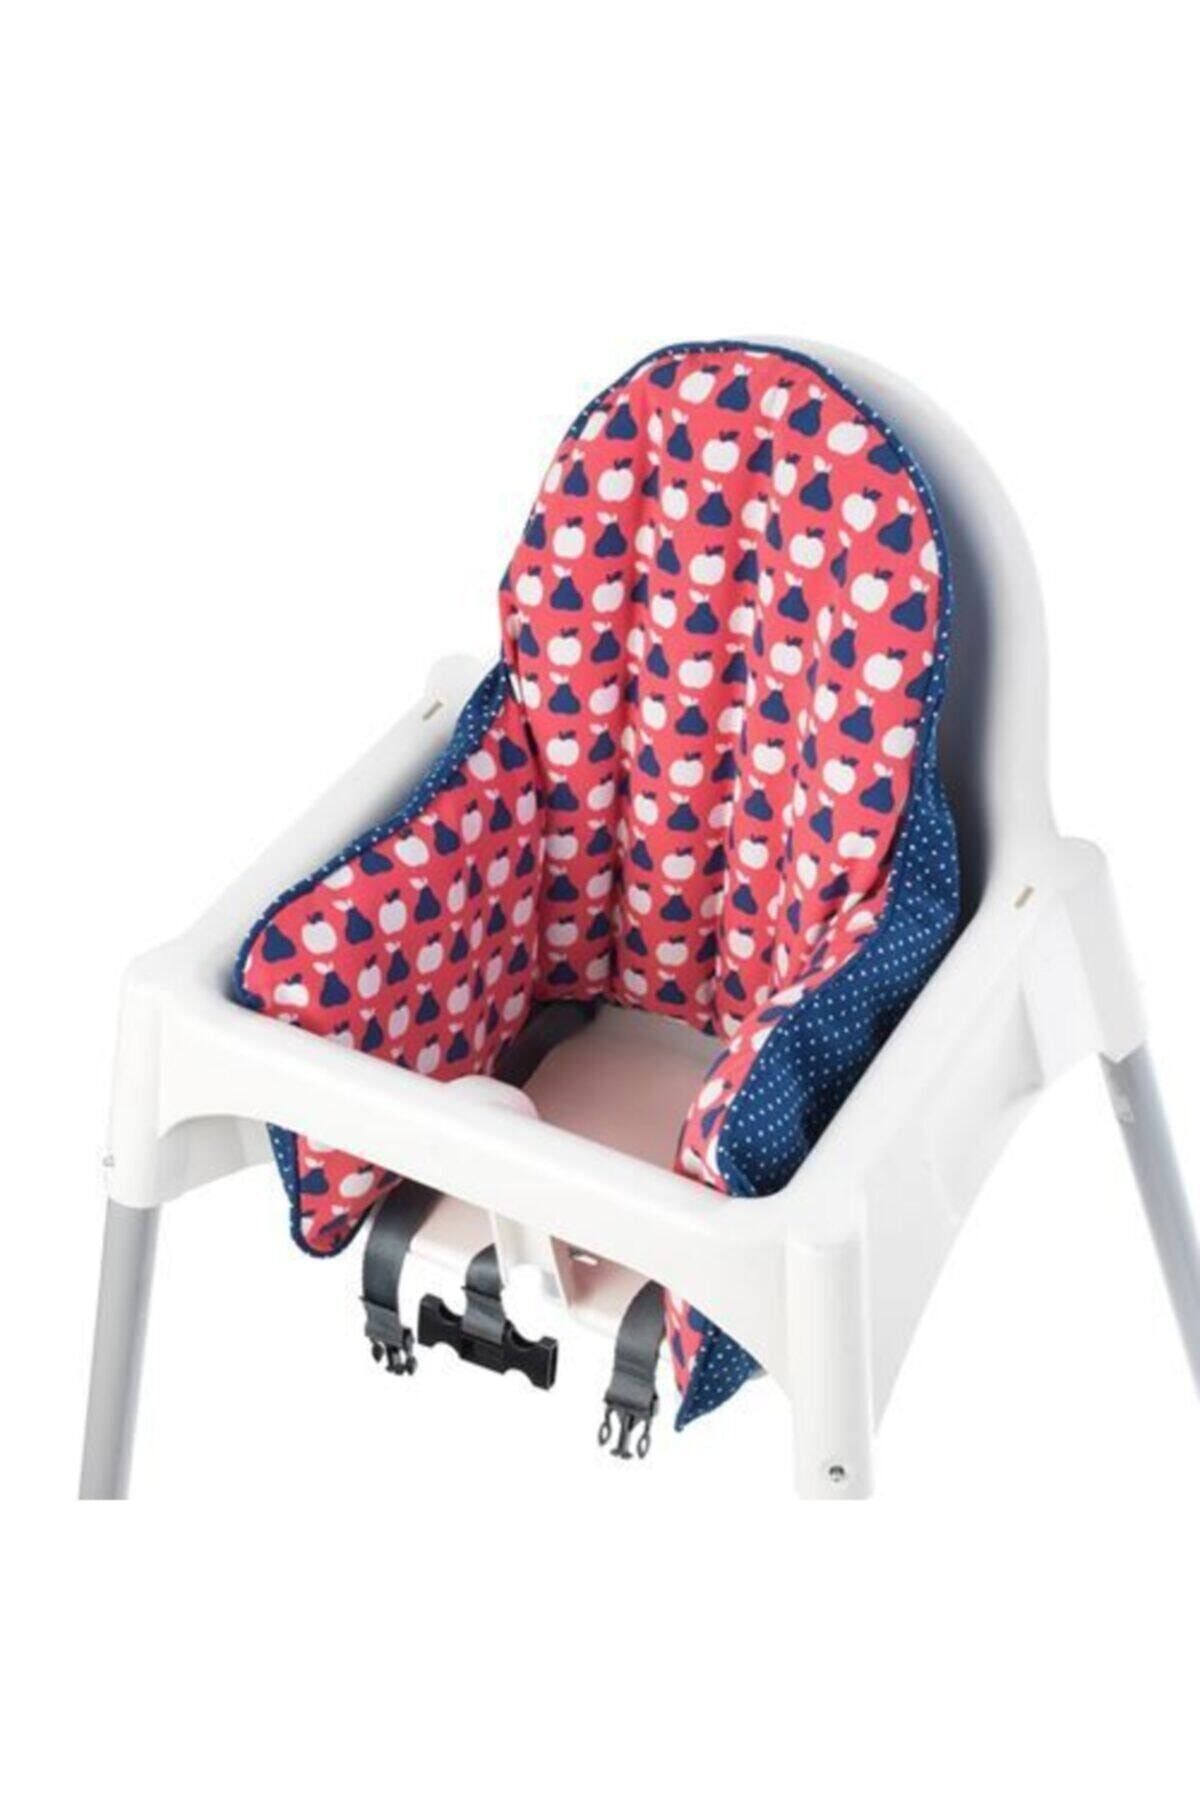 ZUZU MADE Antılop Mama Sandalyesi Için Destek Minderi + Şişme Iç Yastığı